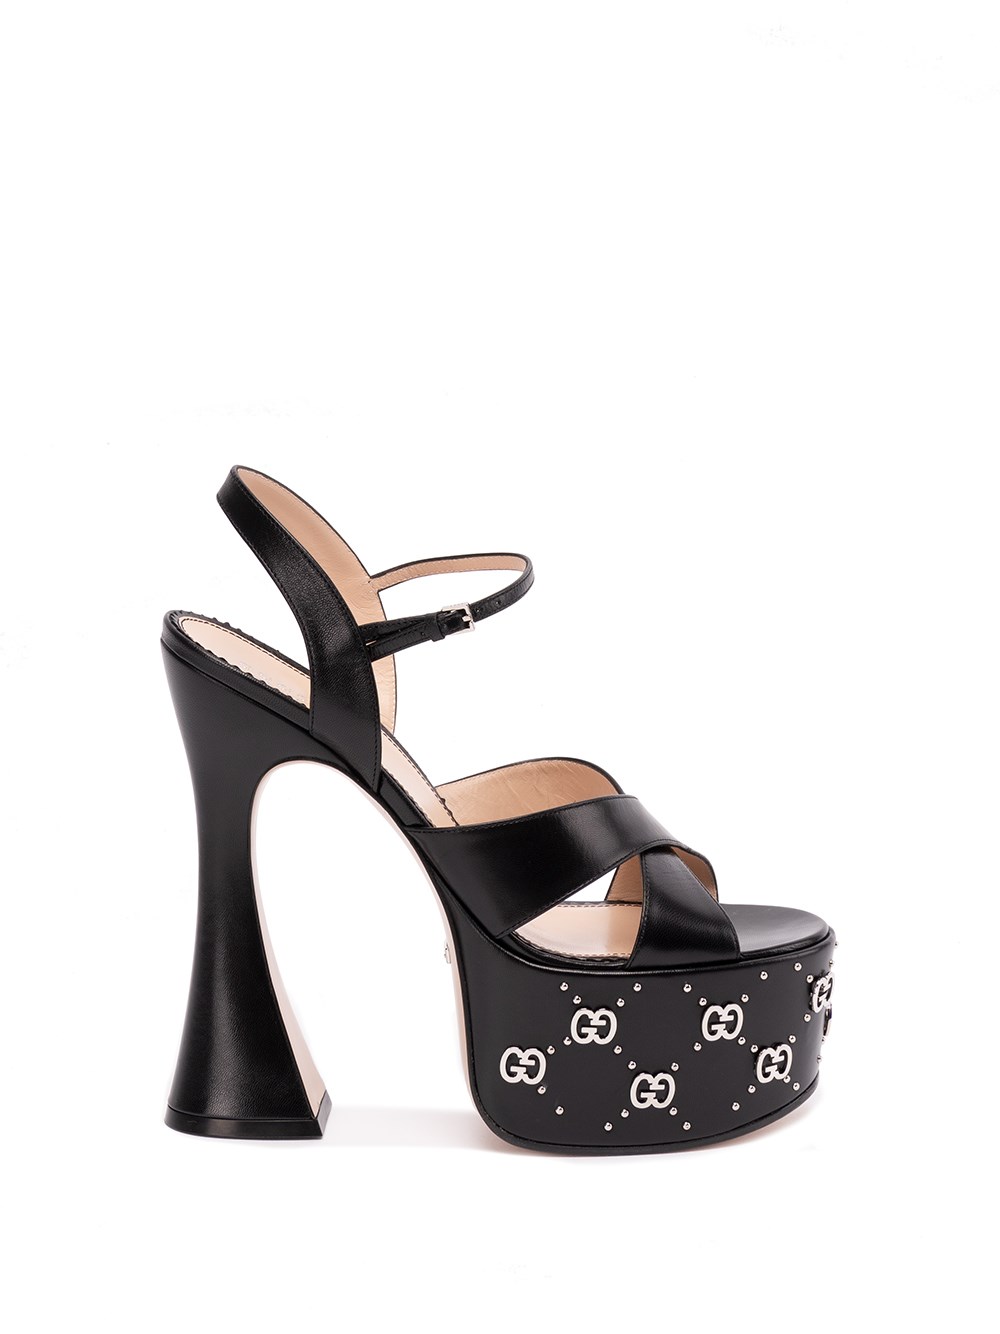 Gucci Interlocking G Studded Platform Sandals 155 In Black